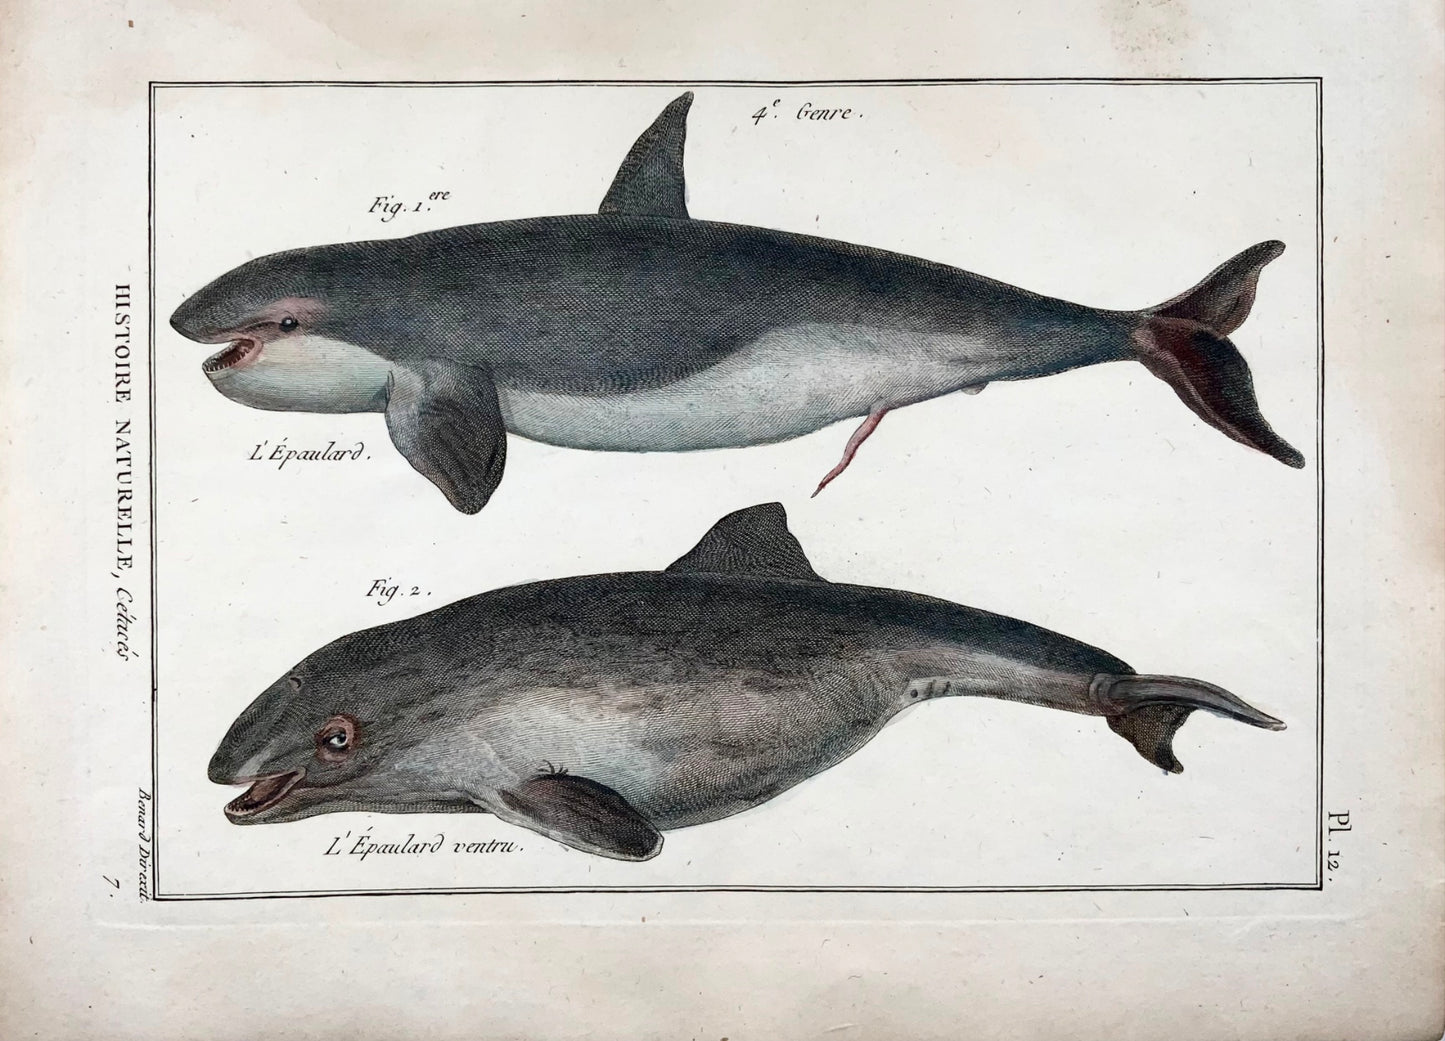 1789 Orca, balene, mammiferi, Benard sc. quarto, colore a mano, incisione, vita marina